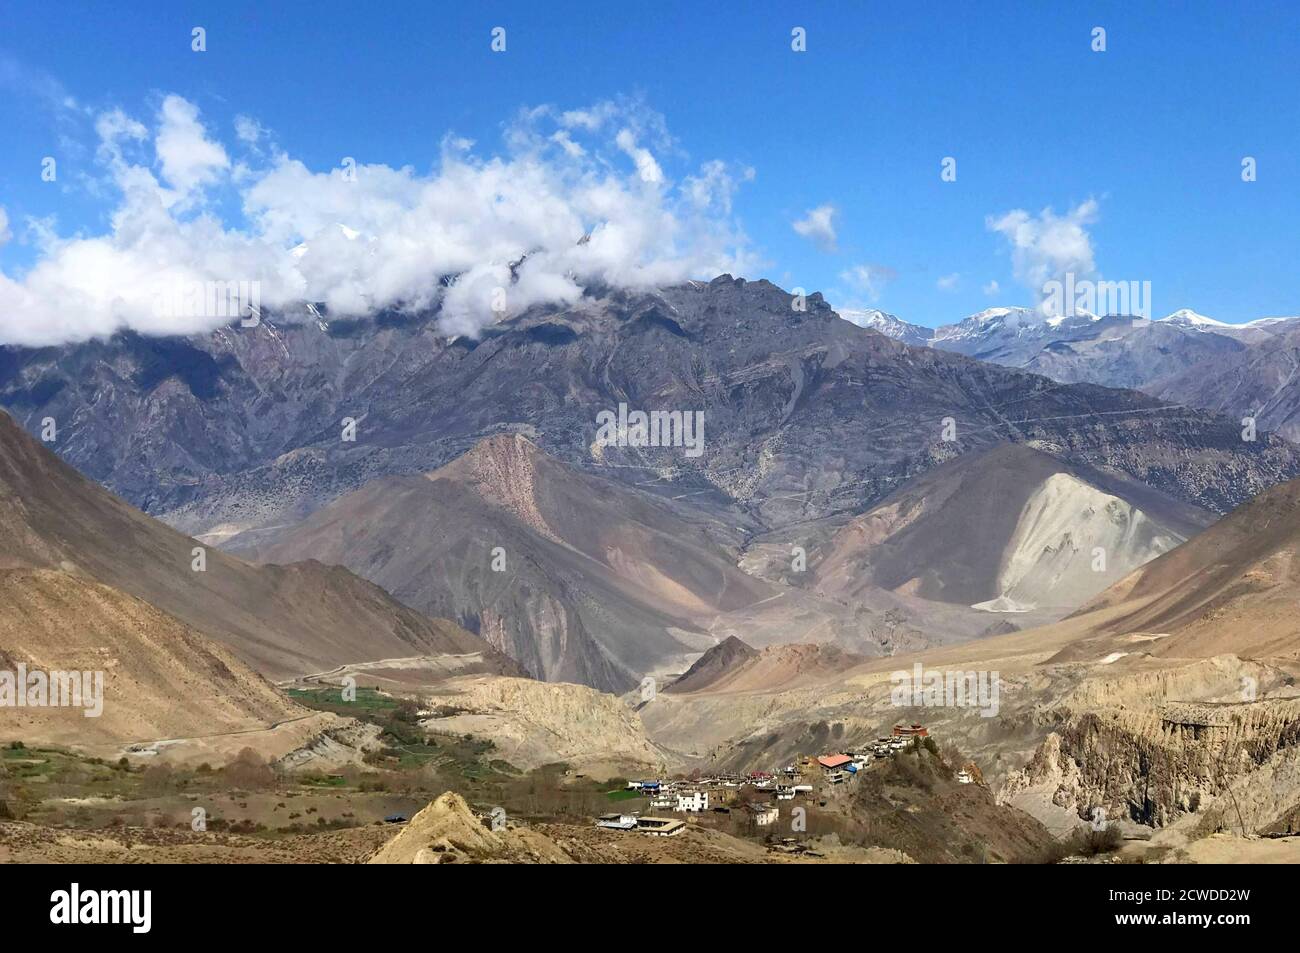 Magnifique paysage himalayan dans le Royaume de Mustang, au Népal. Incroyable nature montagneuse. Paysage panoramique sur la gamme Dhaulagiri. L'Himalaya à couper le souffle. Banque D'Images